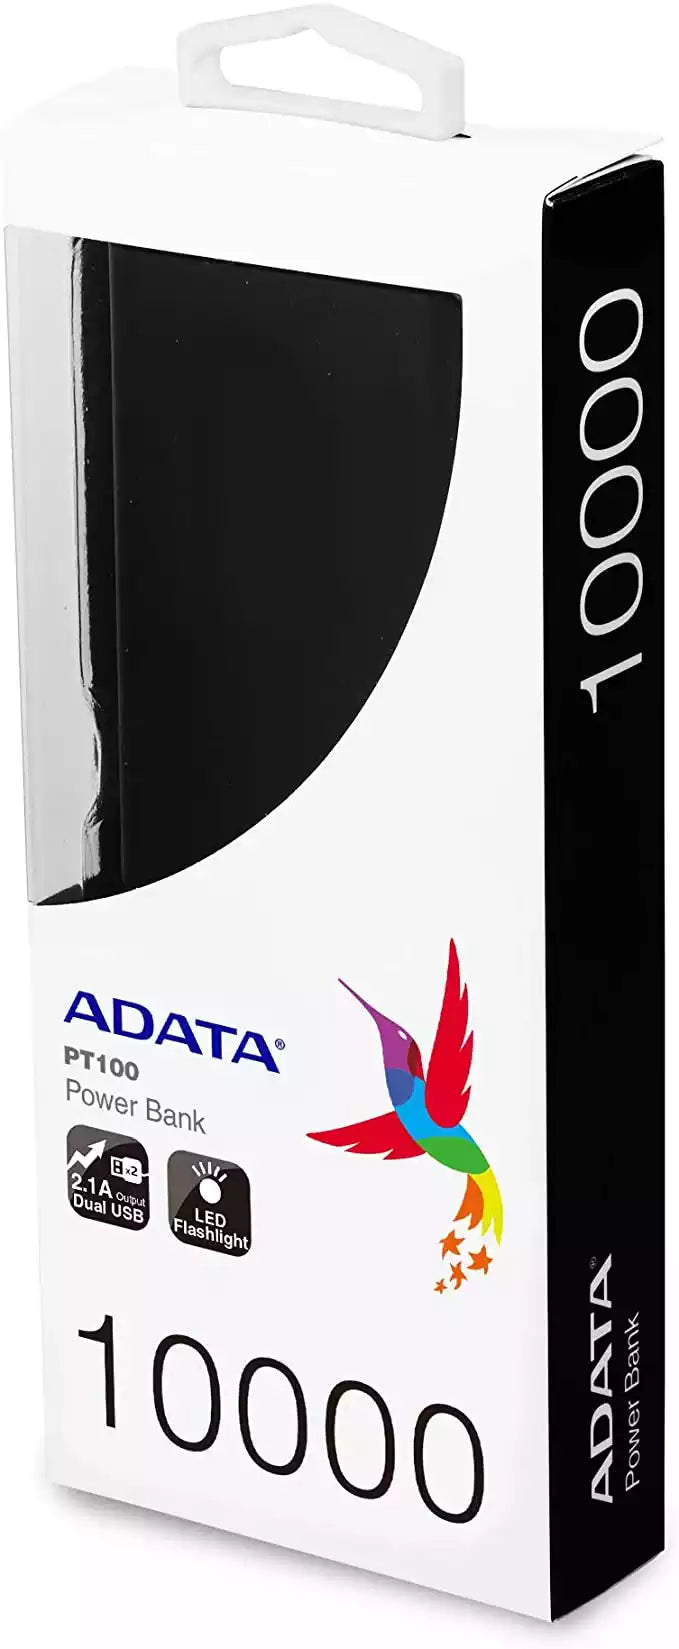 ADATA APT100-10000M-5V-CBKGR Powerbank Batería Portátil 10000 mAh Modelo PT100